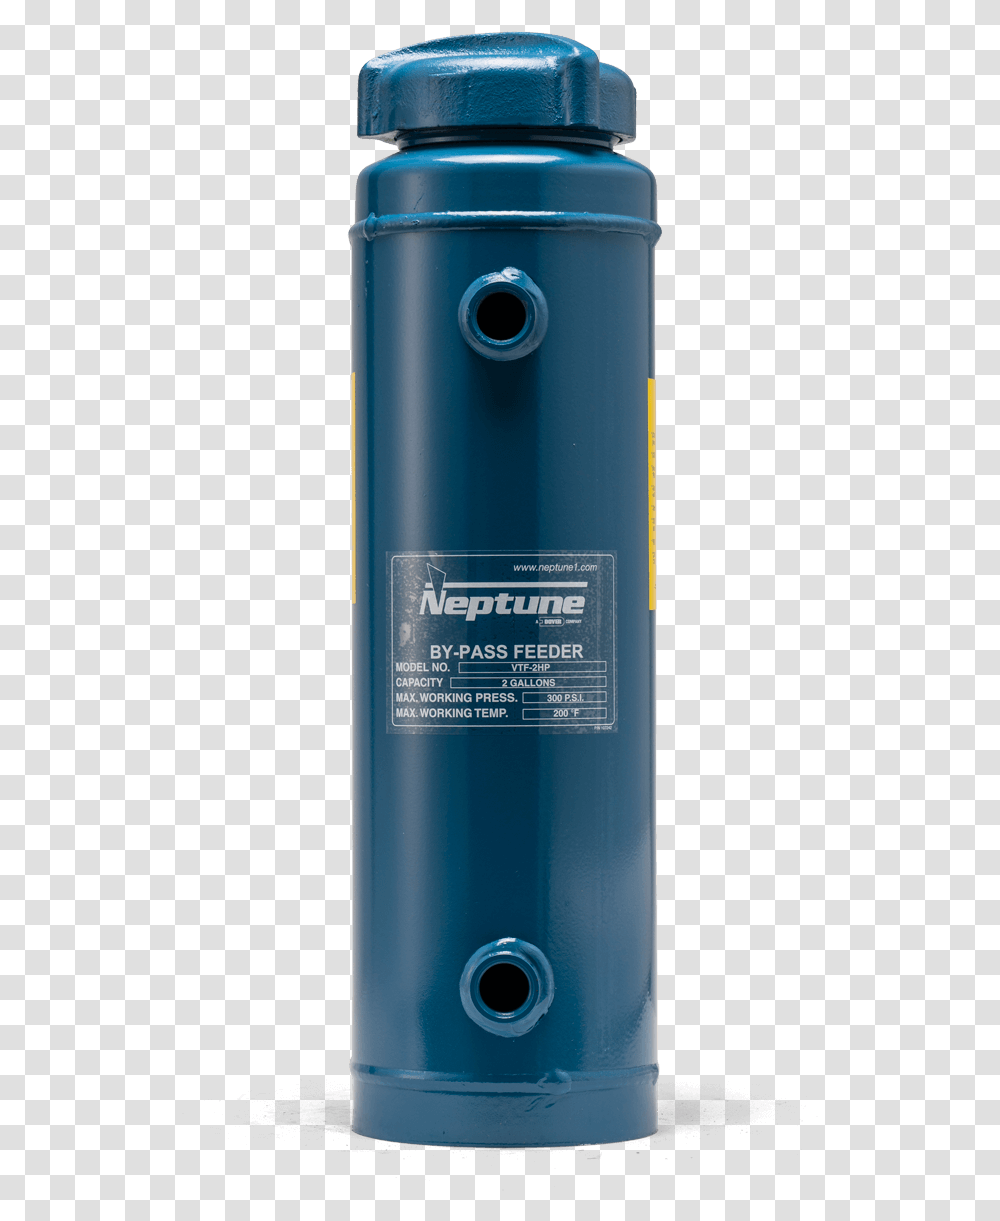 Fiji Water Bottle, Shaker, Cylinder, Aluminium, Tin Transparent Png